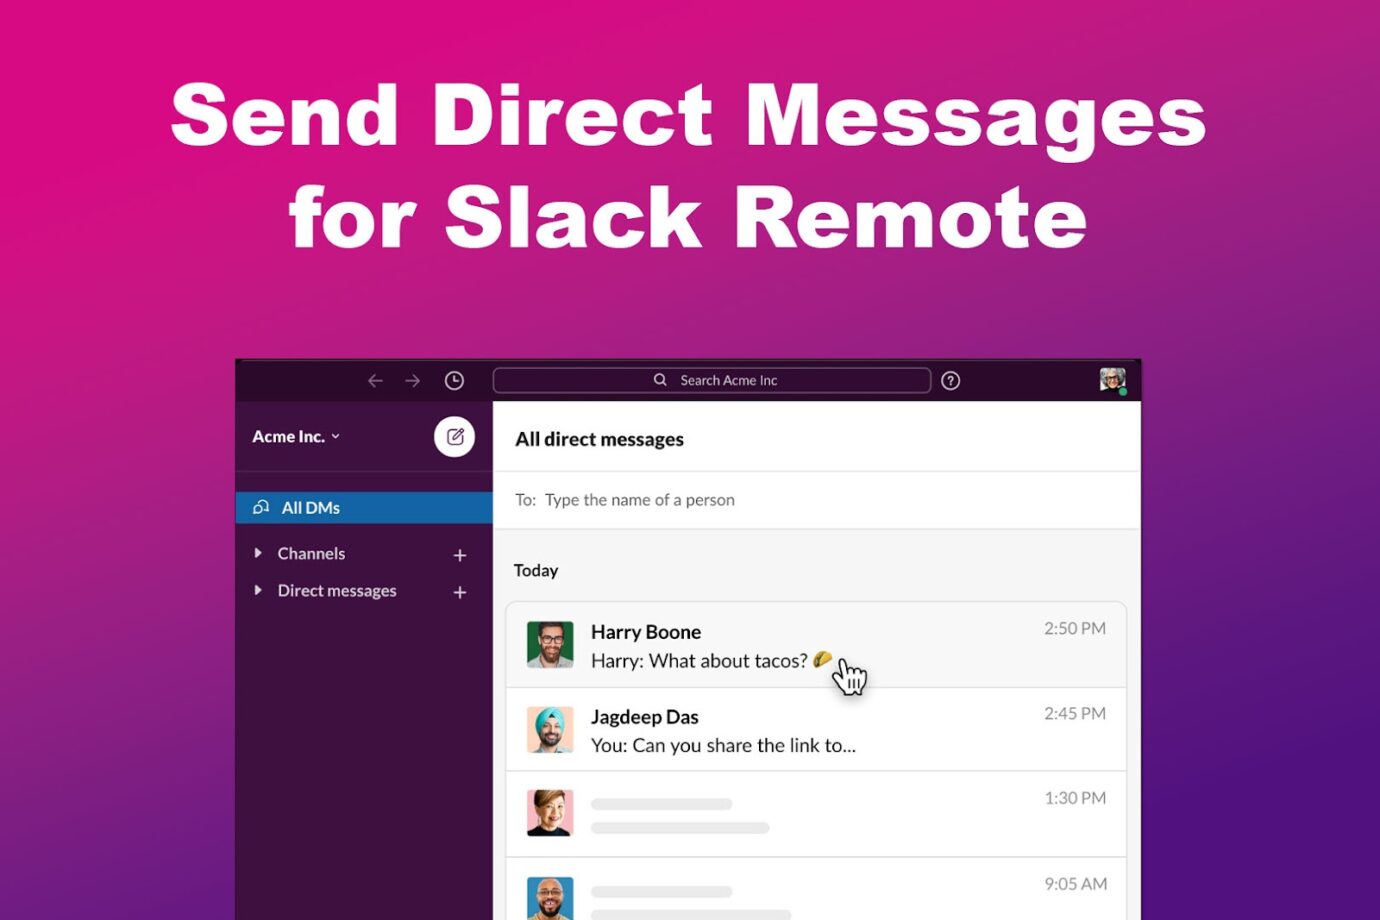 Send Direct Messages for Slack Remote